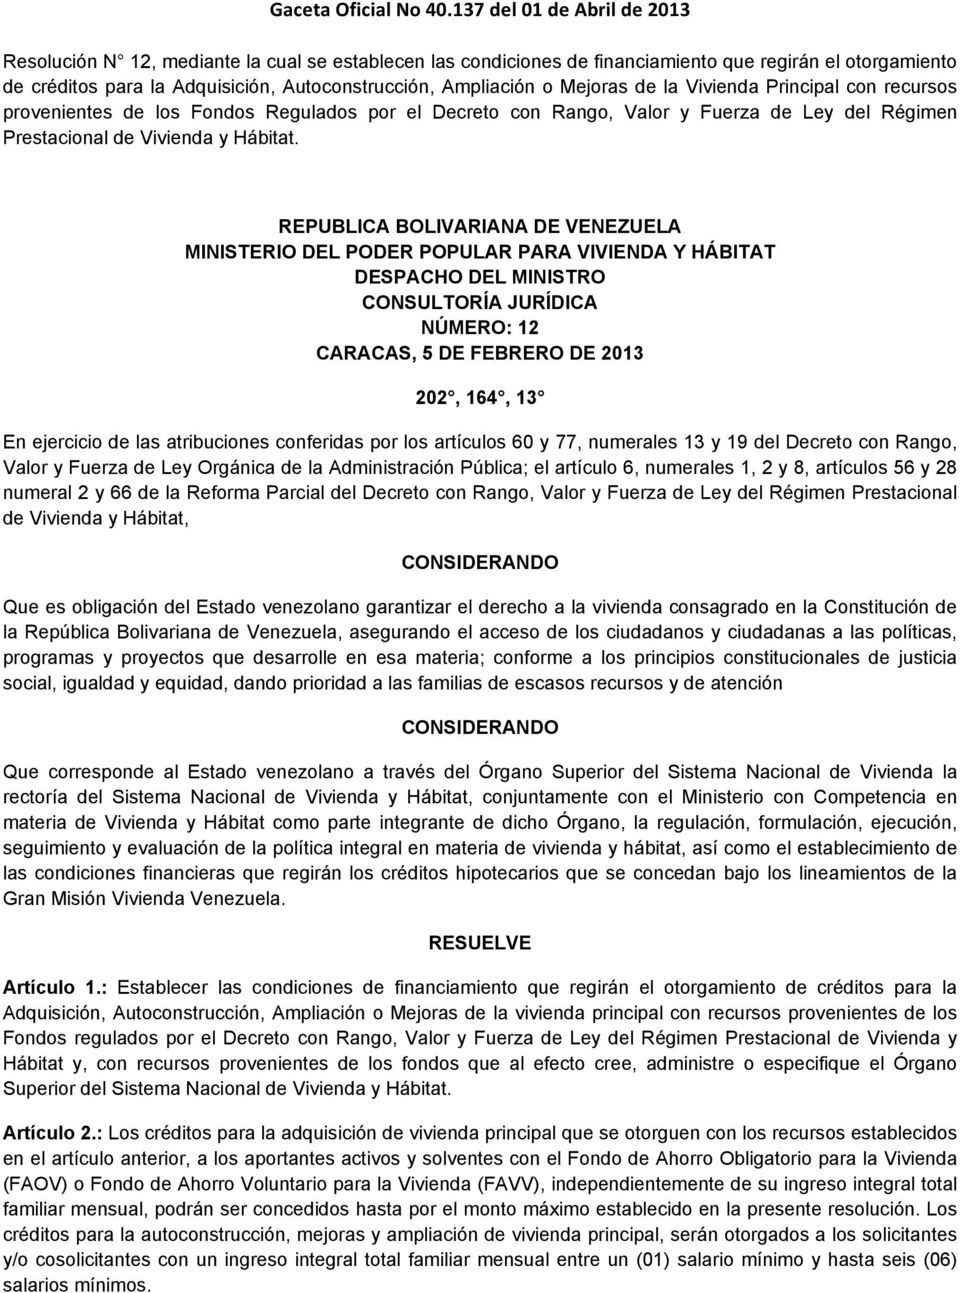 REPUBLICA BOLIVARIANA DE VENEZUELA MINISTERIO DEL PODER POPULAR PARA VIVIENDA Y HÁBITAT DESPACHO DEL MINISTRO CONSULTORÍA JURÍDICA NÚMERO: 12 CARACAS, 5 DE FEBRERO DE 2013 202, 164, 13 En ejercicio